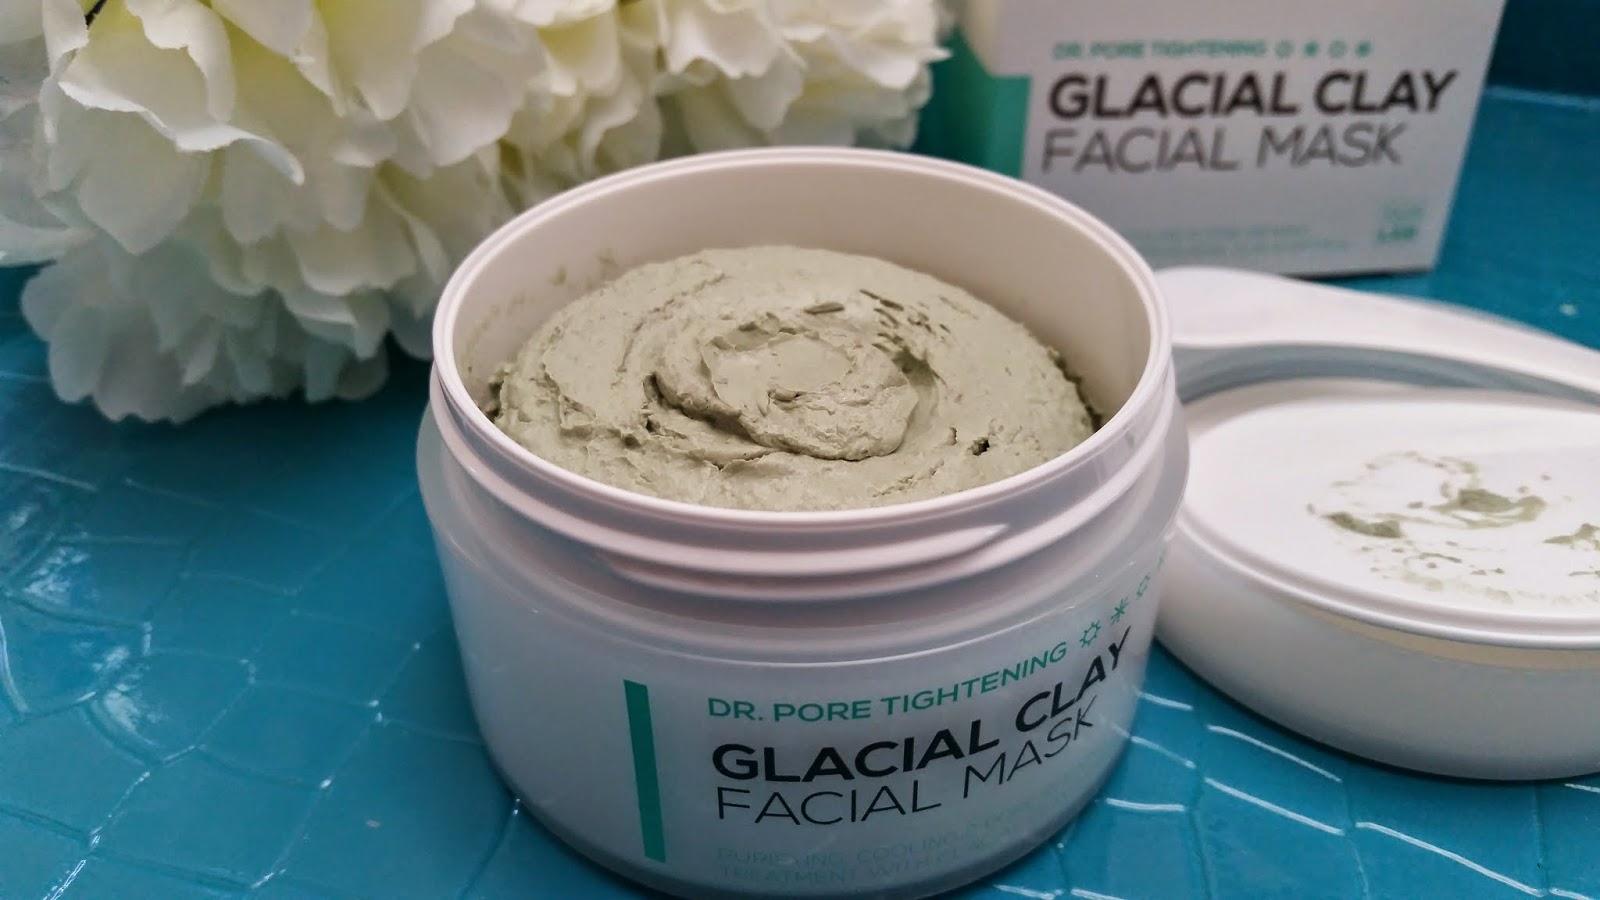 Dr. Pore Tightening: Glacial Clay Facial Mask 